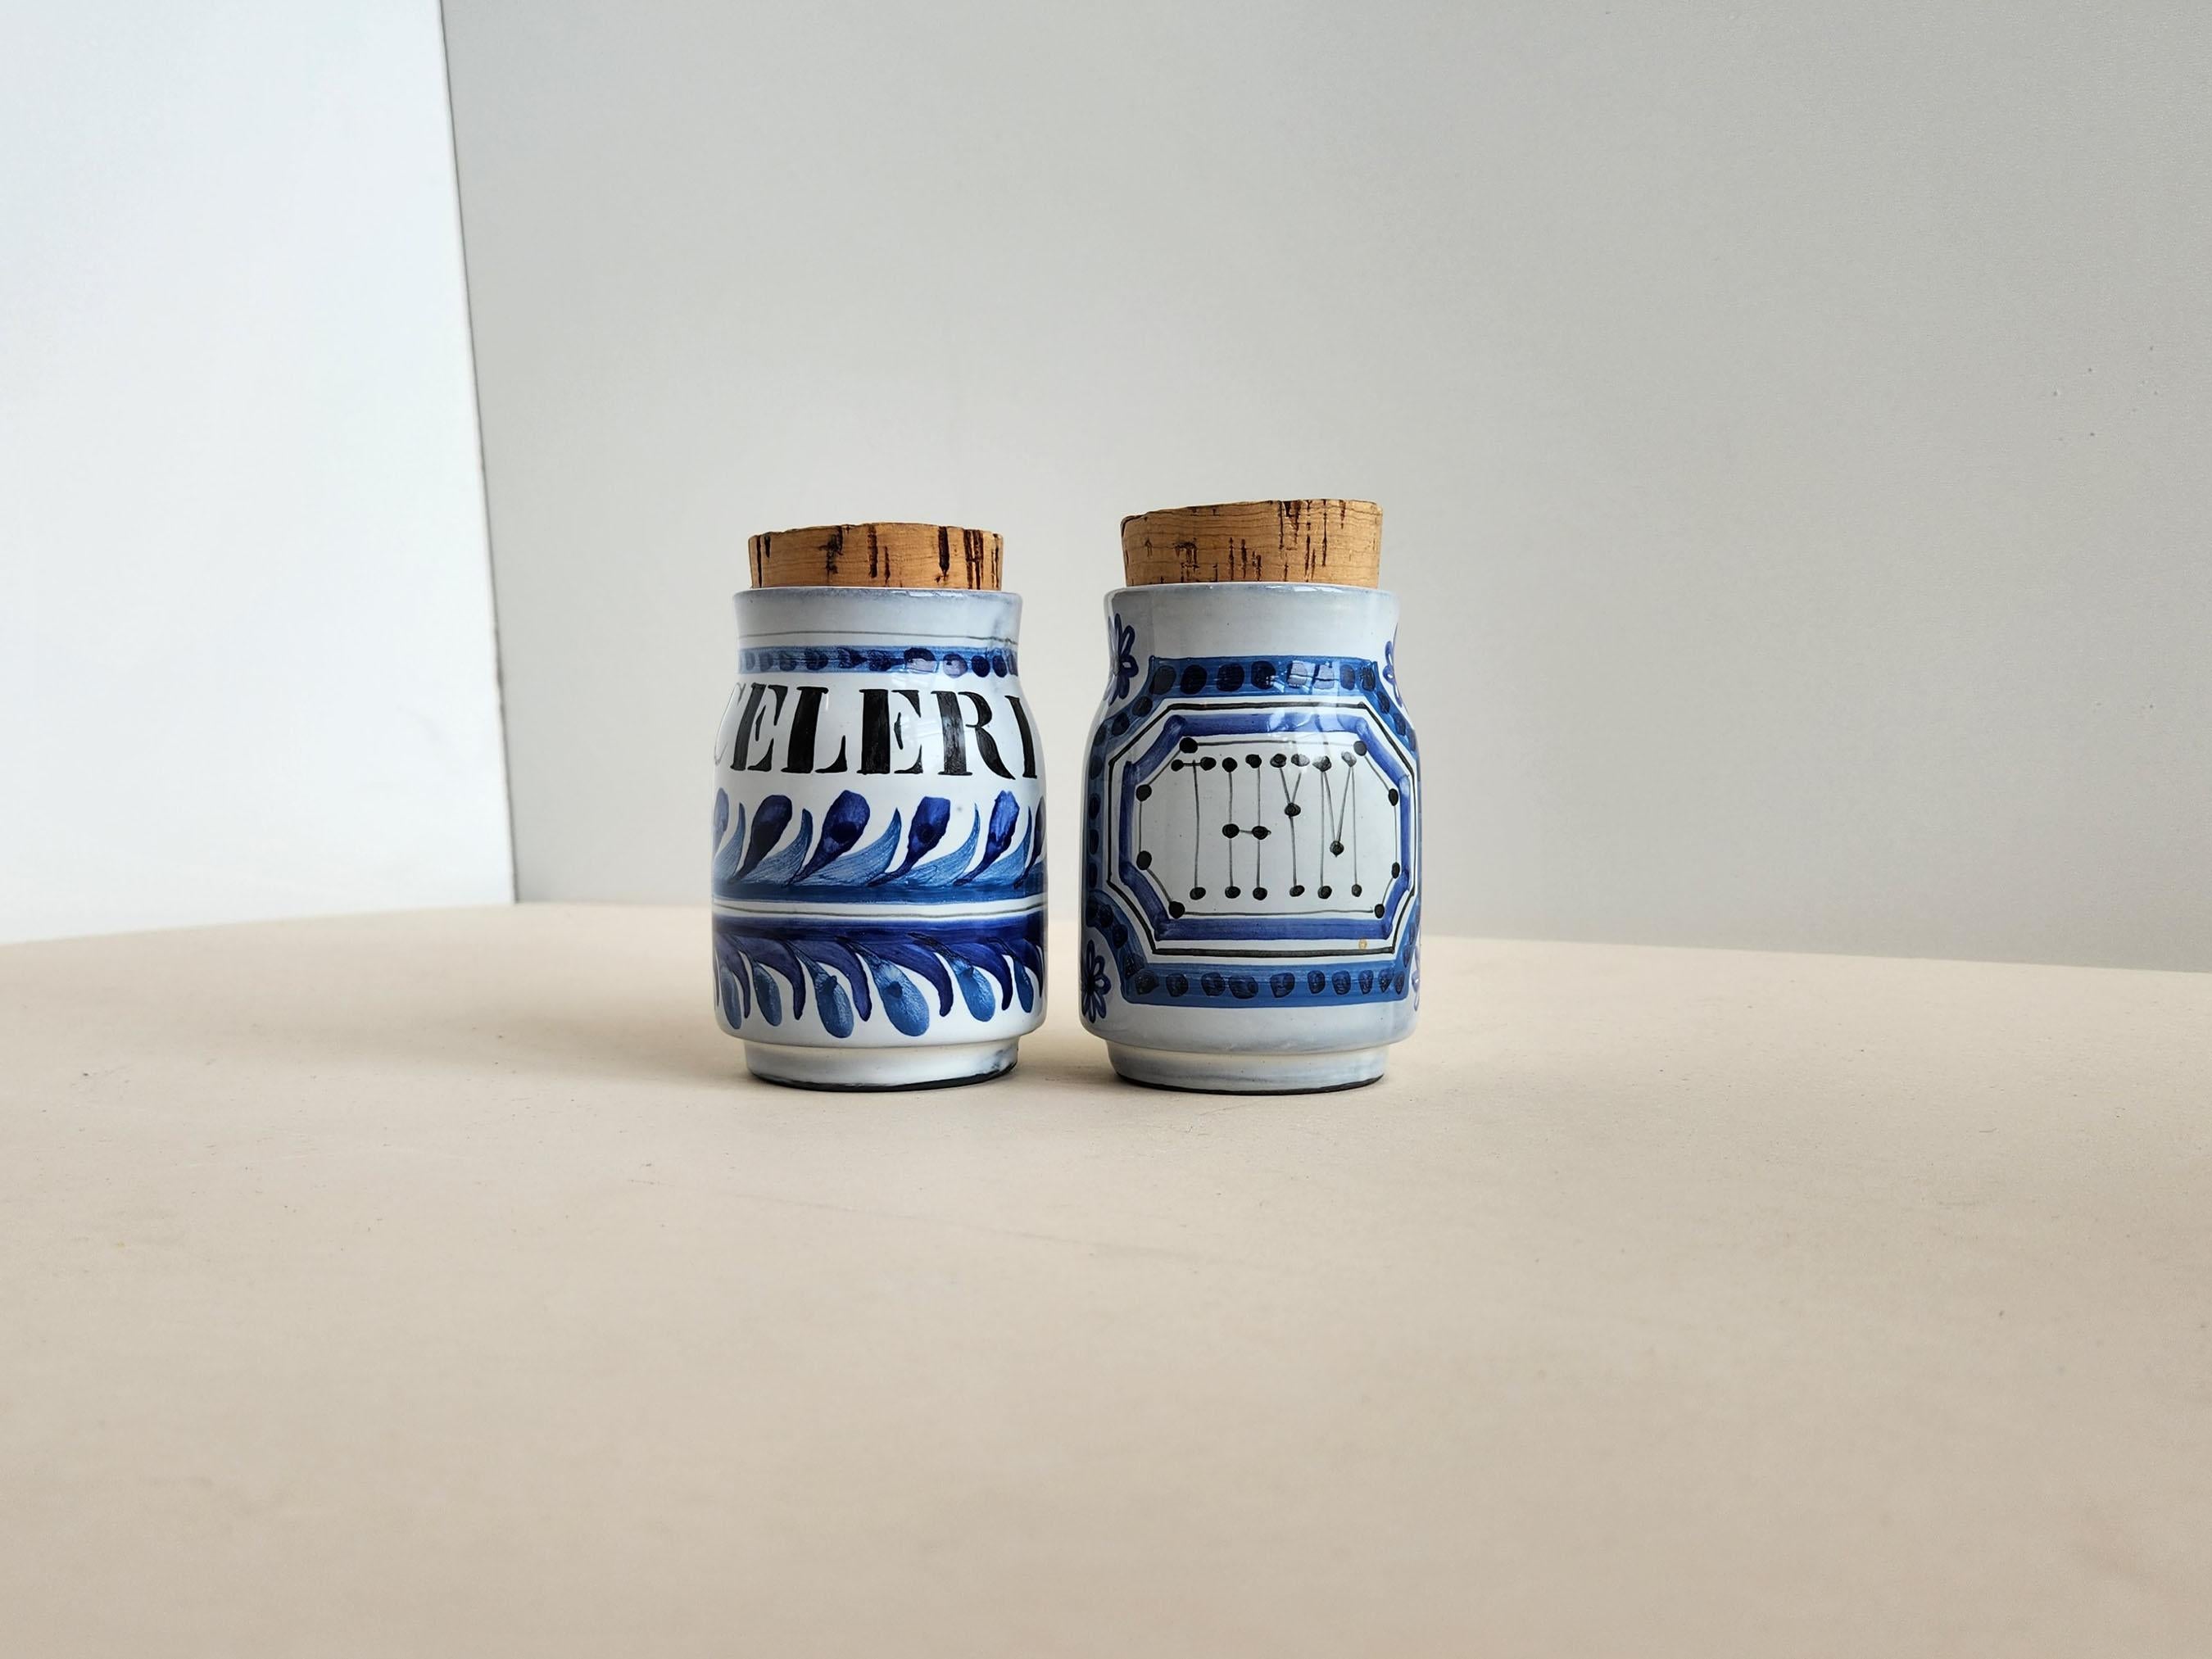 Vintage Keramikgefäße mit Korkdeckeln für Sellerie und Thymian von Roger Capron - Vallauris, Frankreich

Roger Capron war ein einflussreicher französischer Keramiker, der für seine Kacheltische und die Verwendung wiederkehrender Motive wie